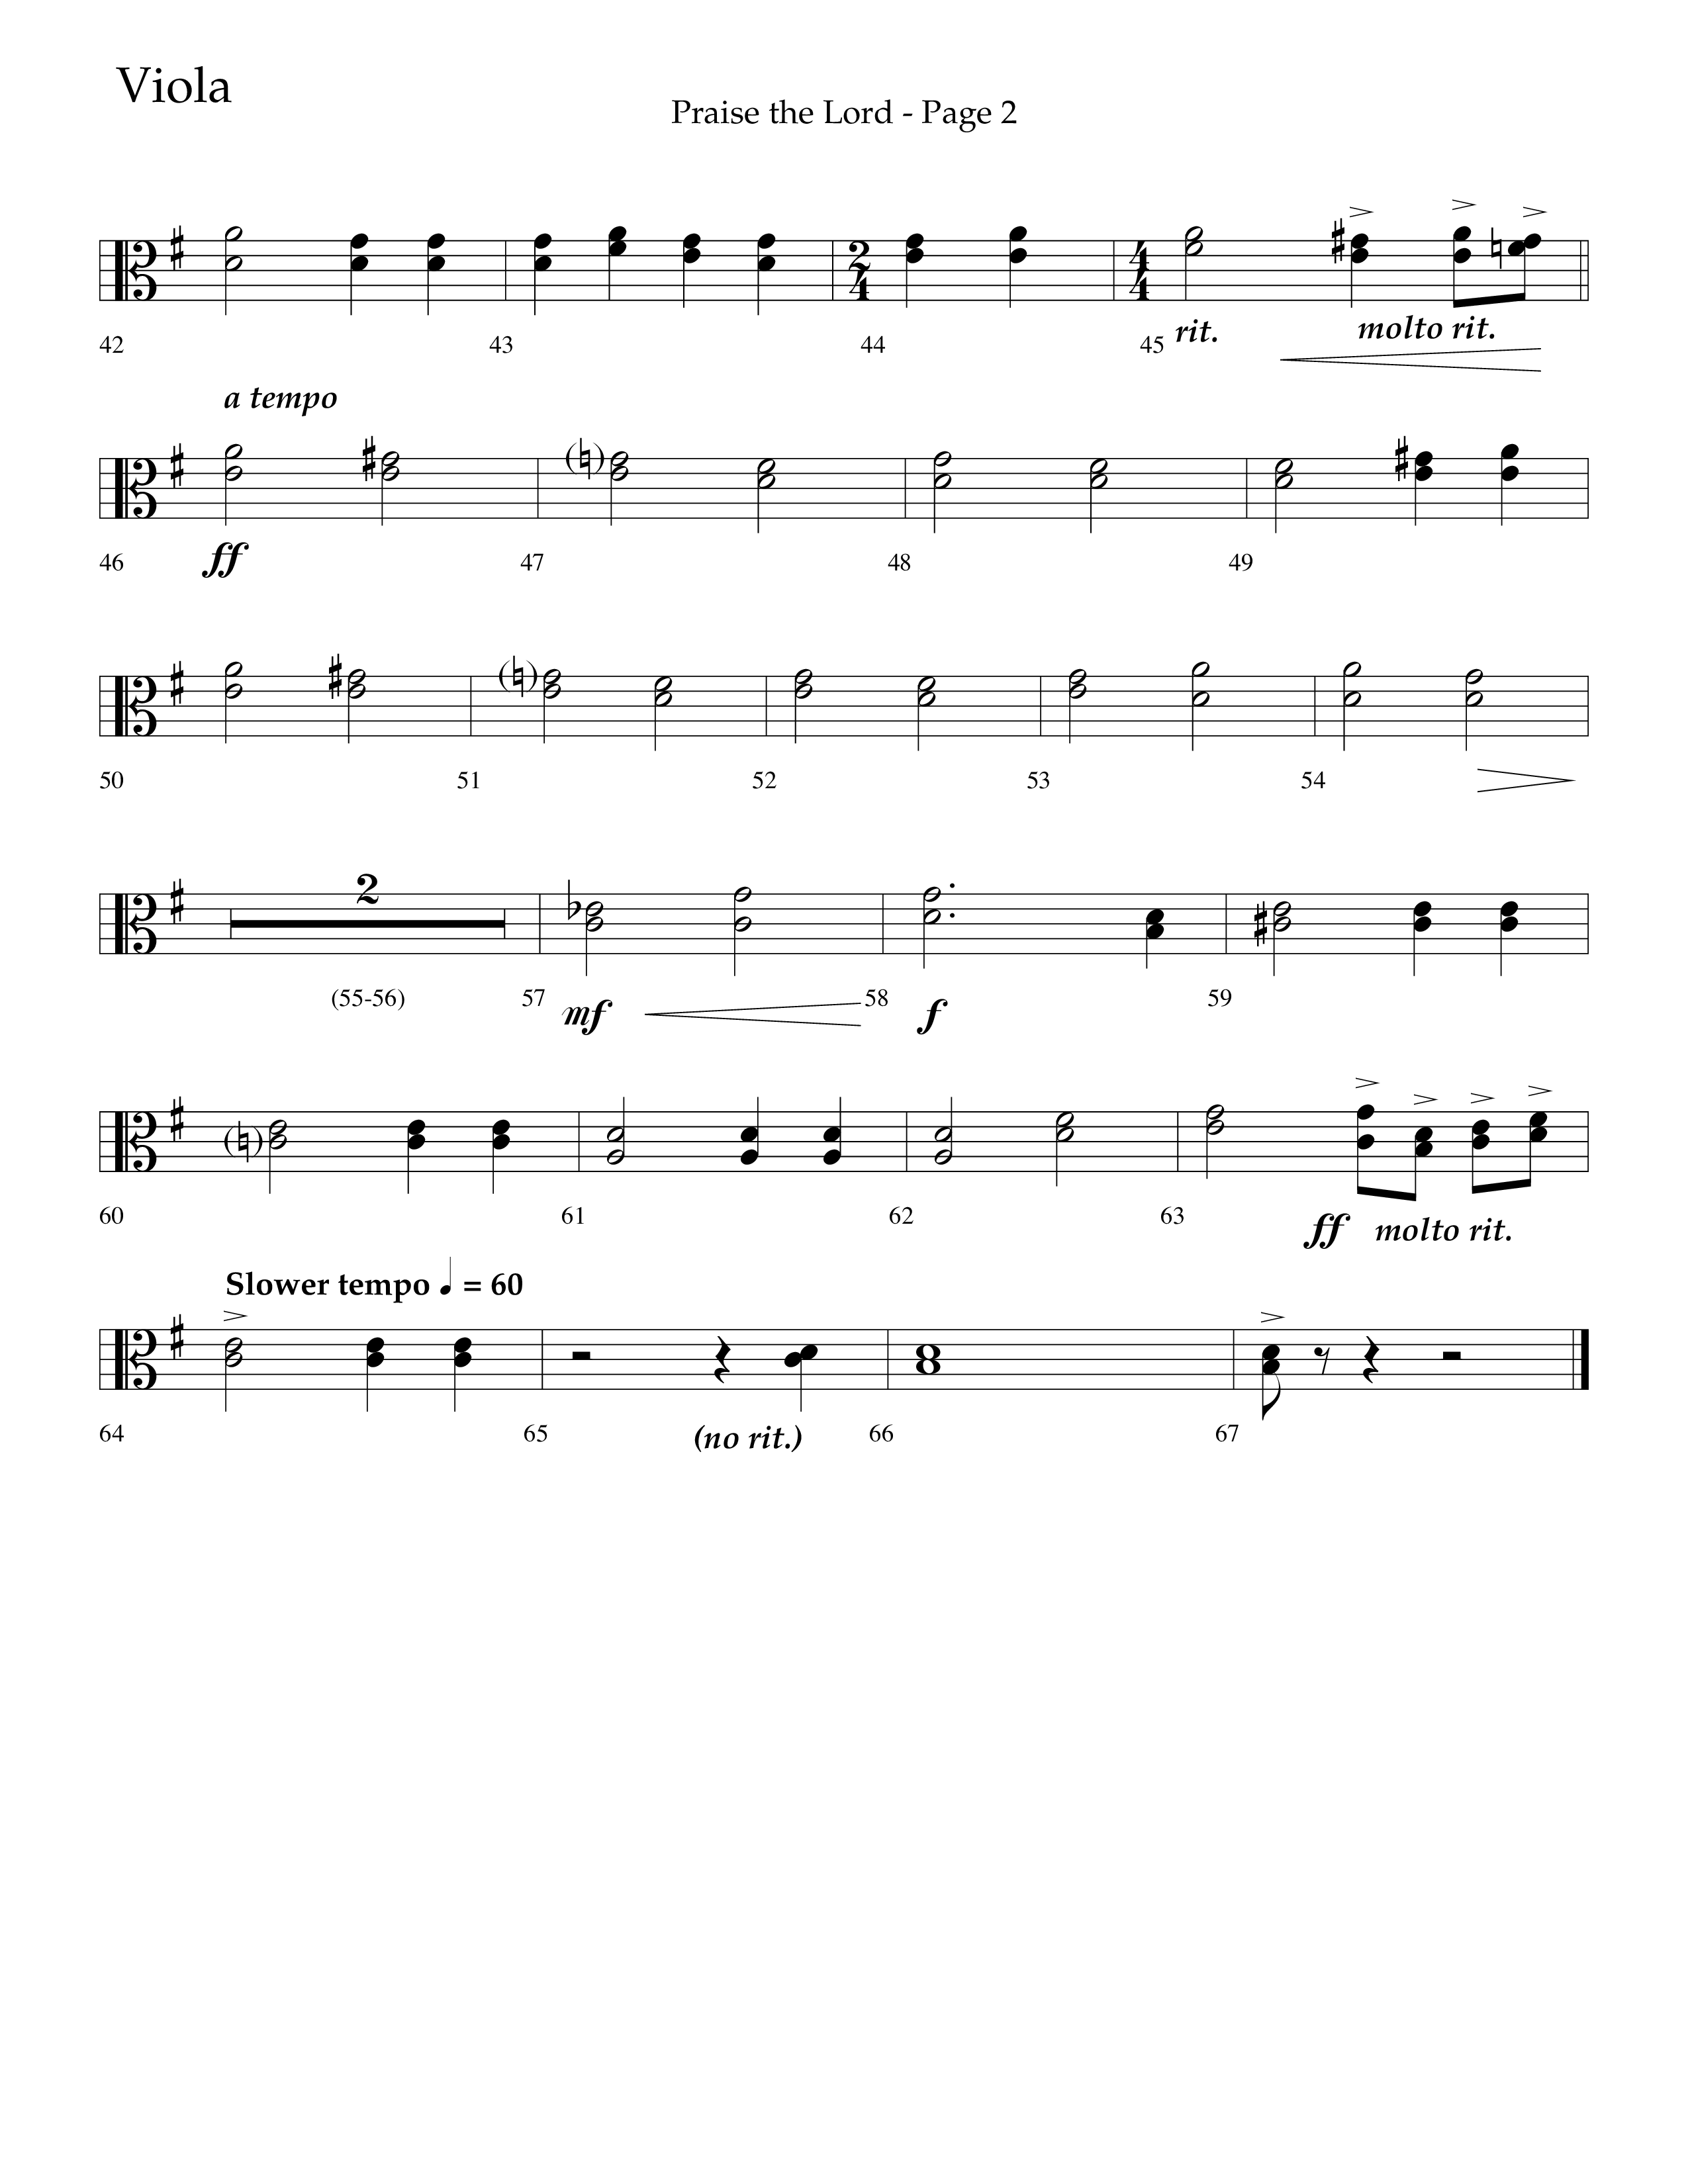 Praise The Lord (Choral Anthem SATB) Viola (Lifeway Choral / Arr. Marty Hamby)